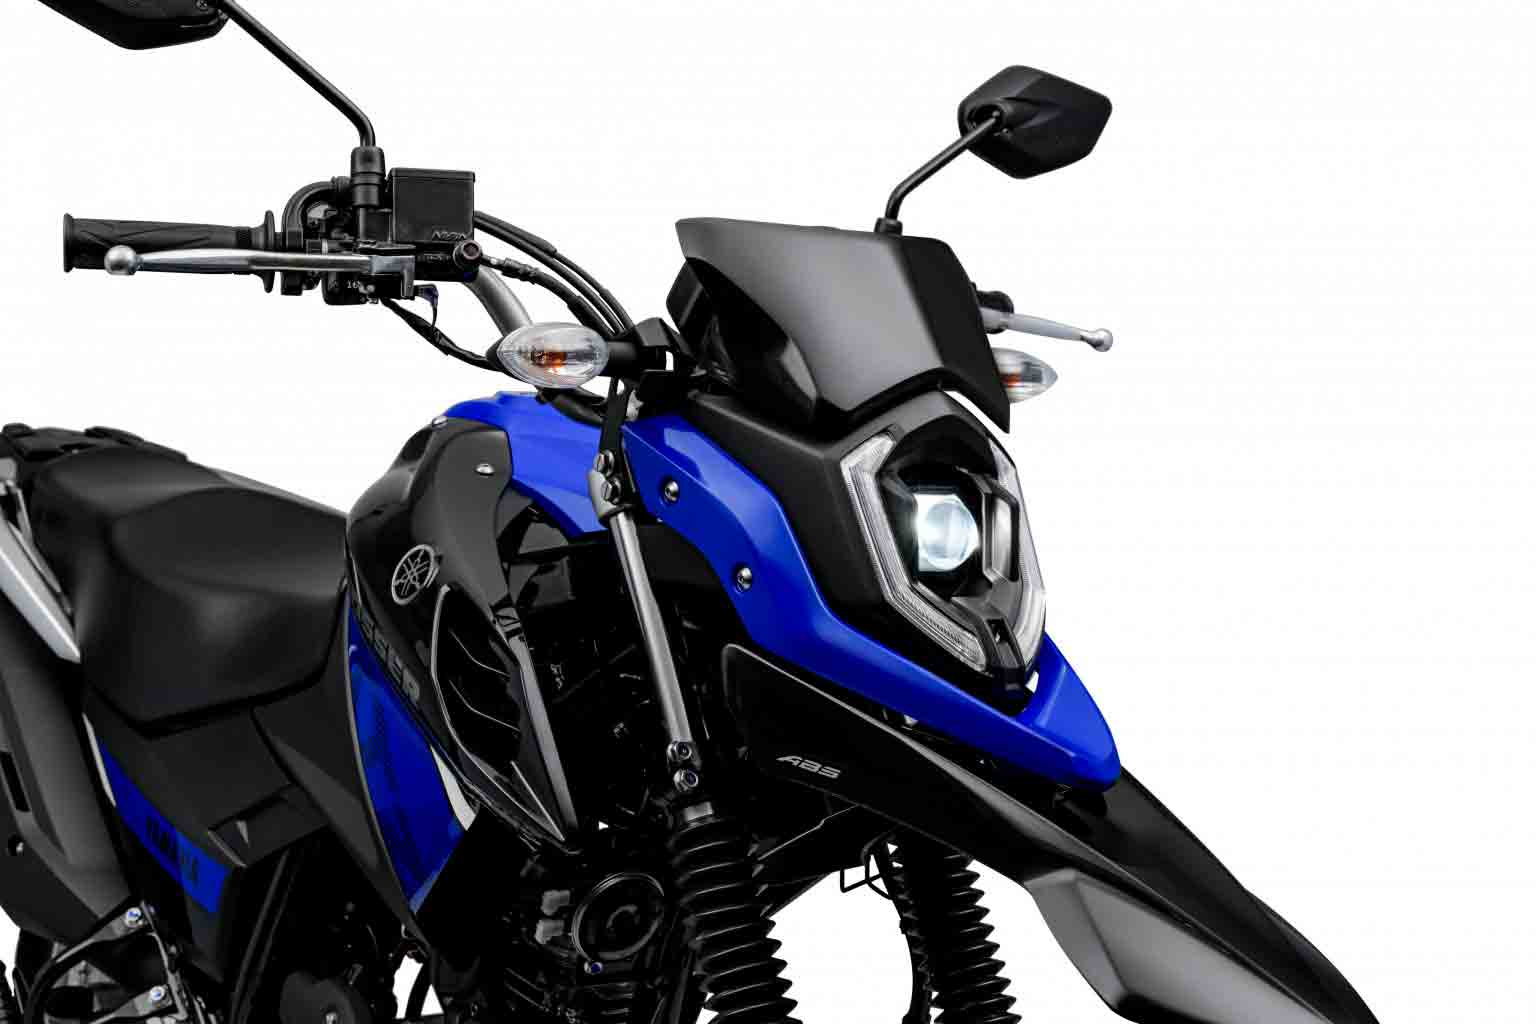 As 10 motos mais vendidas no Brasil em 2020 - Motor Show